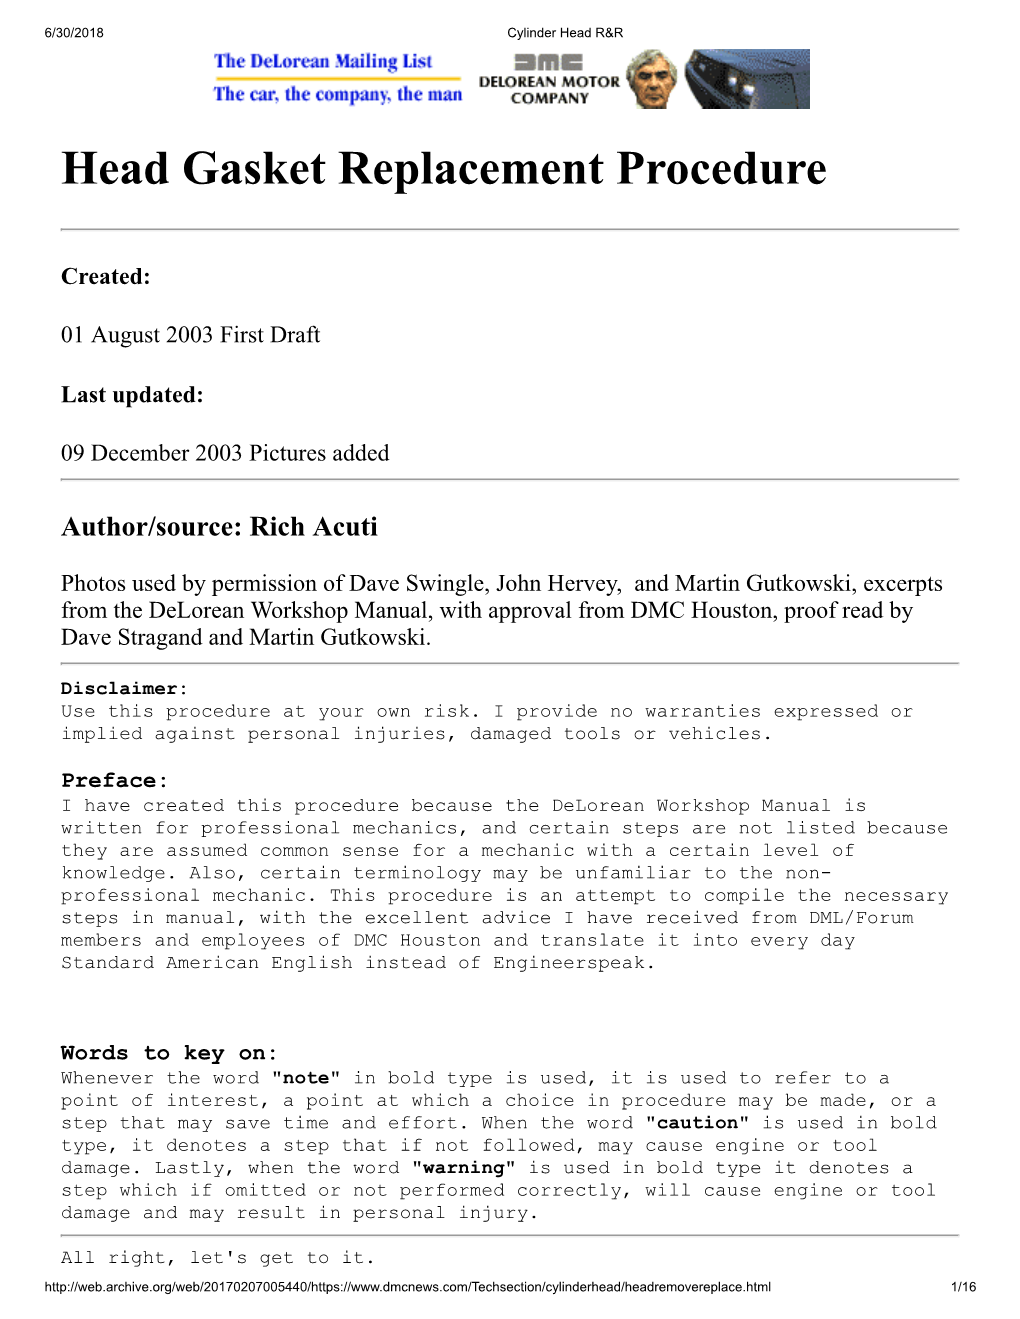 Head Gasket Replacement Procedure